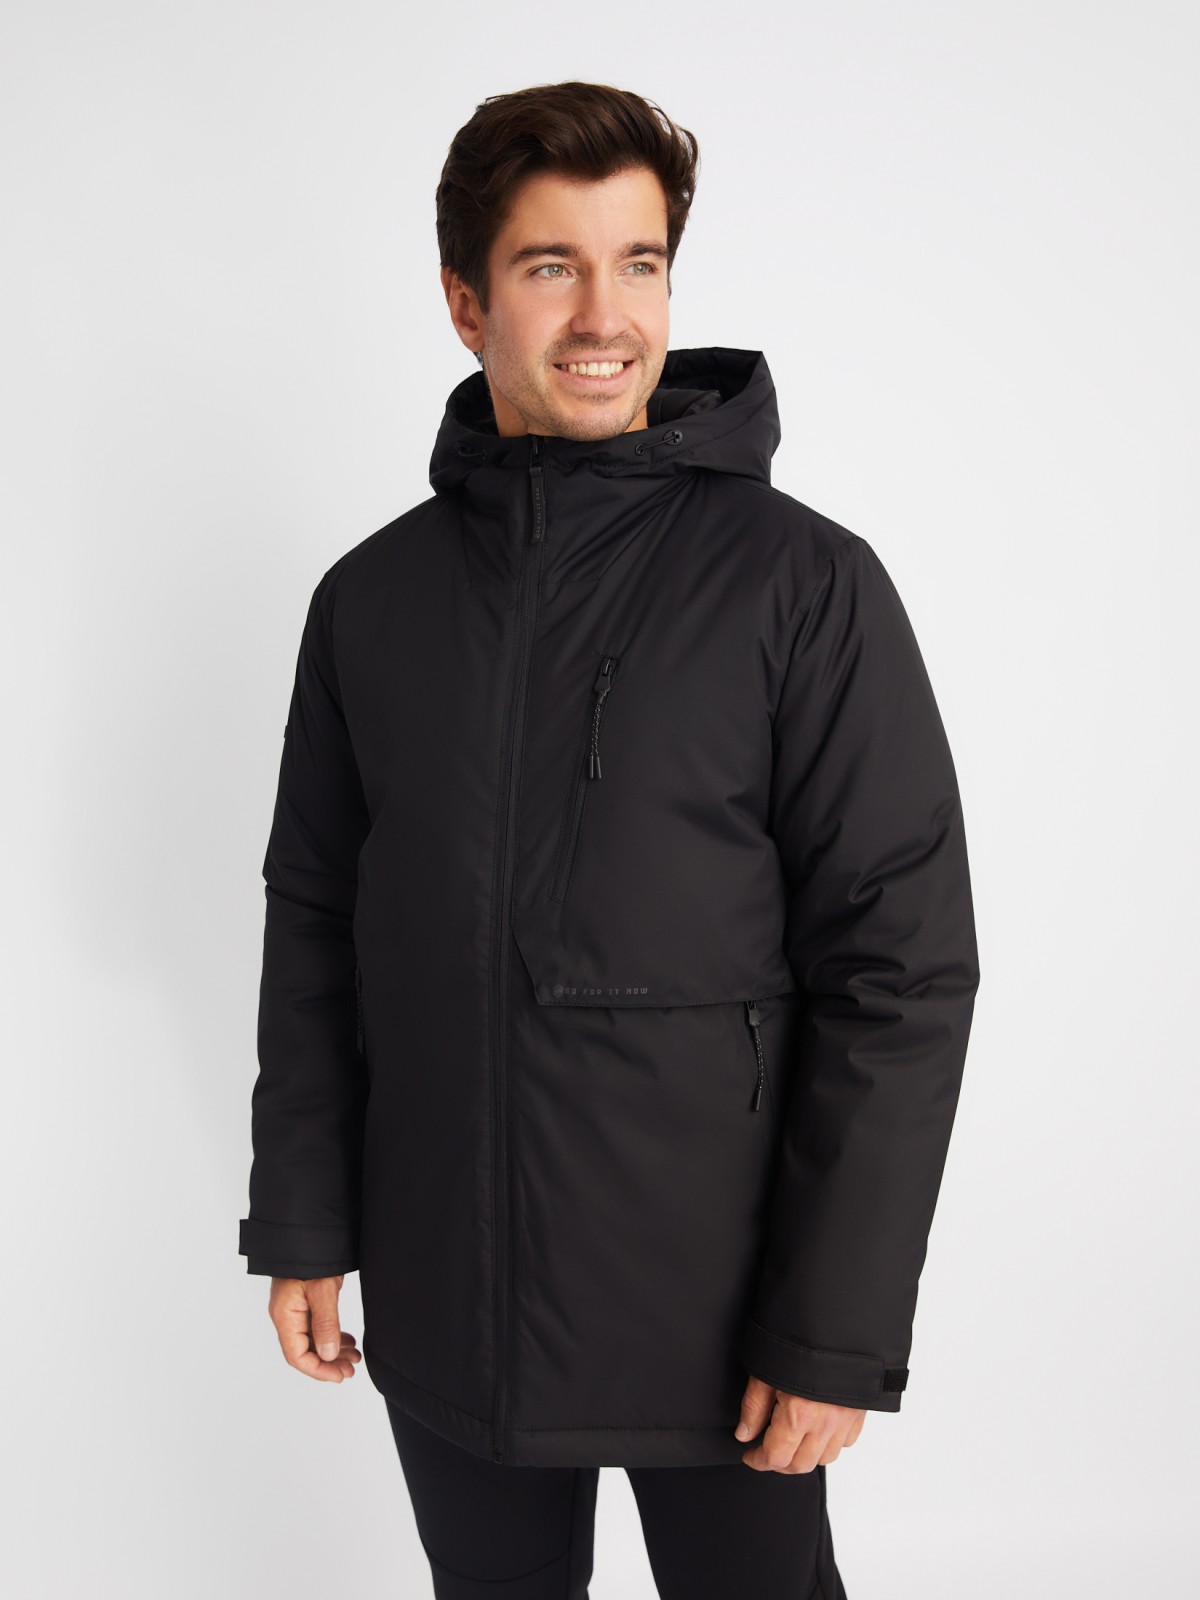 Тёплая куртка с капюшоном на синтепоне zolla 01412510L124, цвет черный, размер M - фото 3